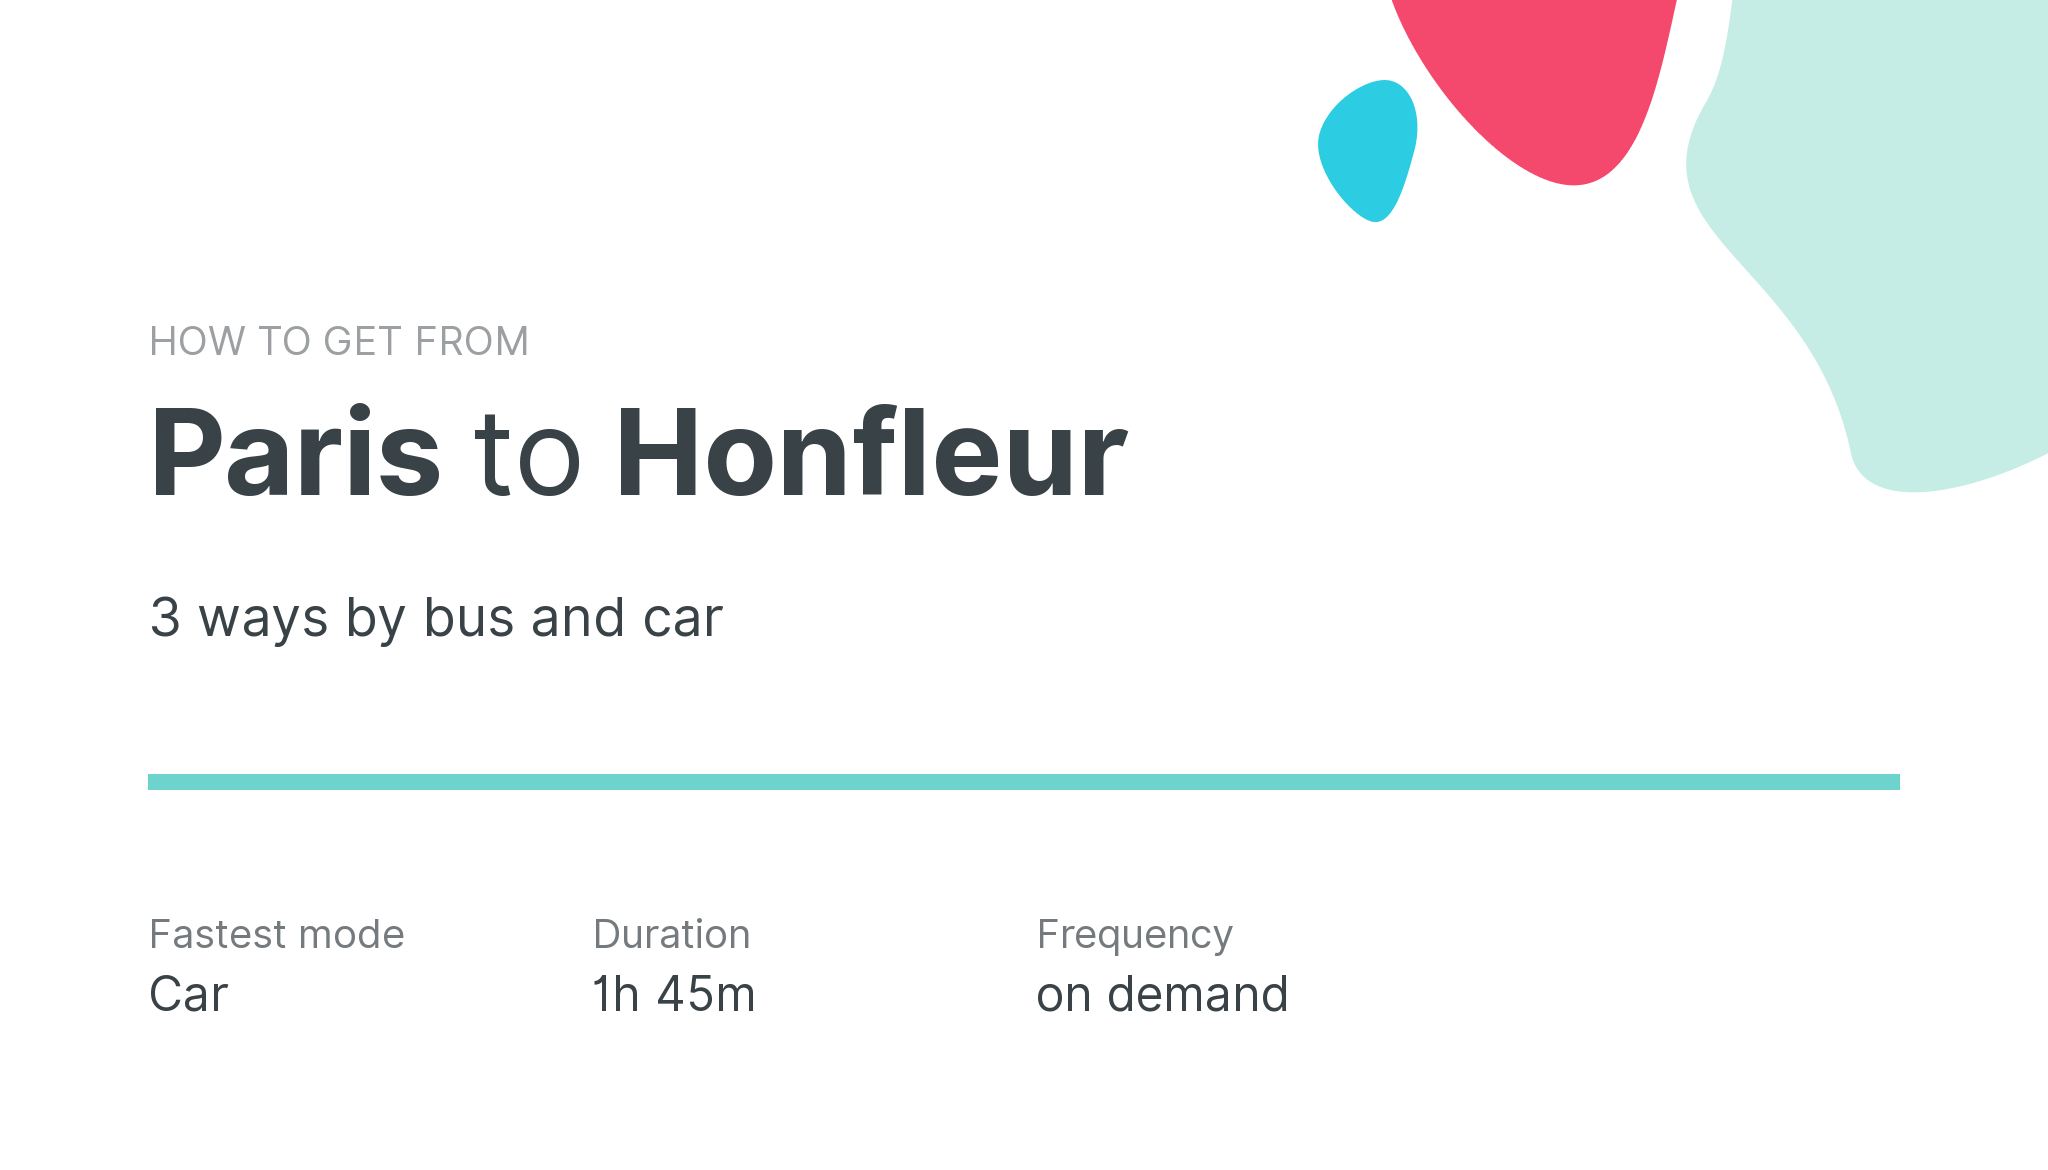 How do I get from Paris to Honfleur